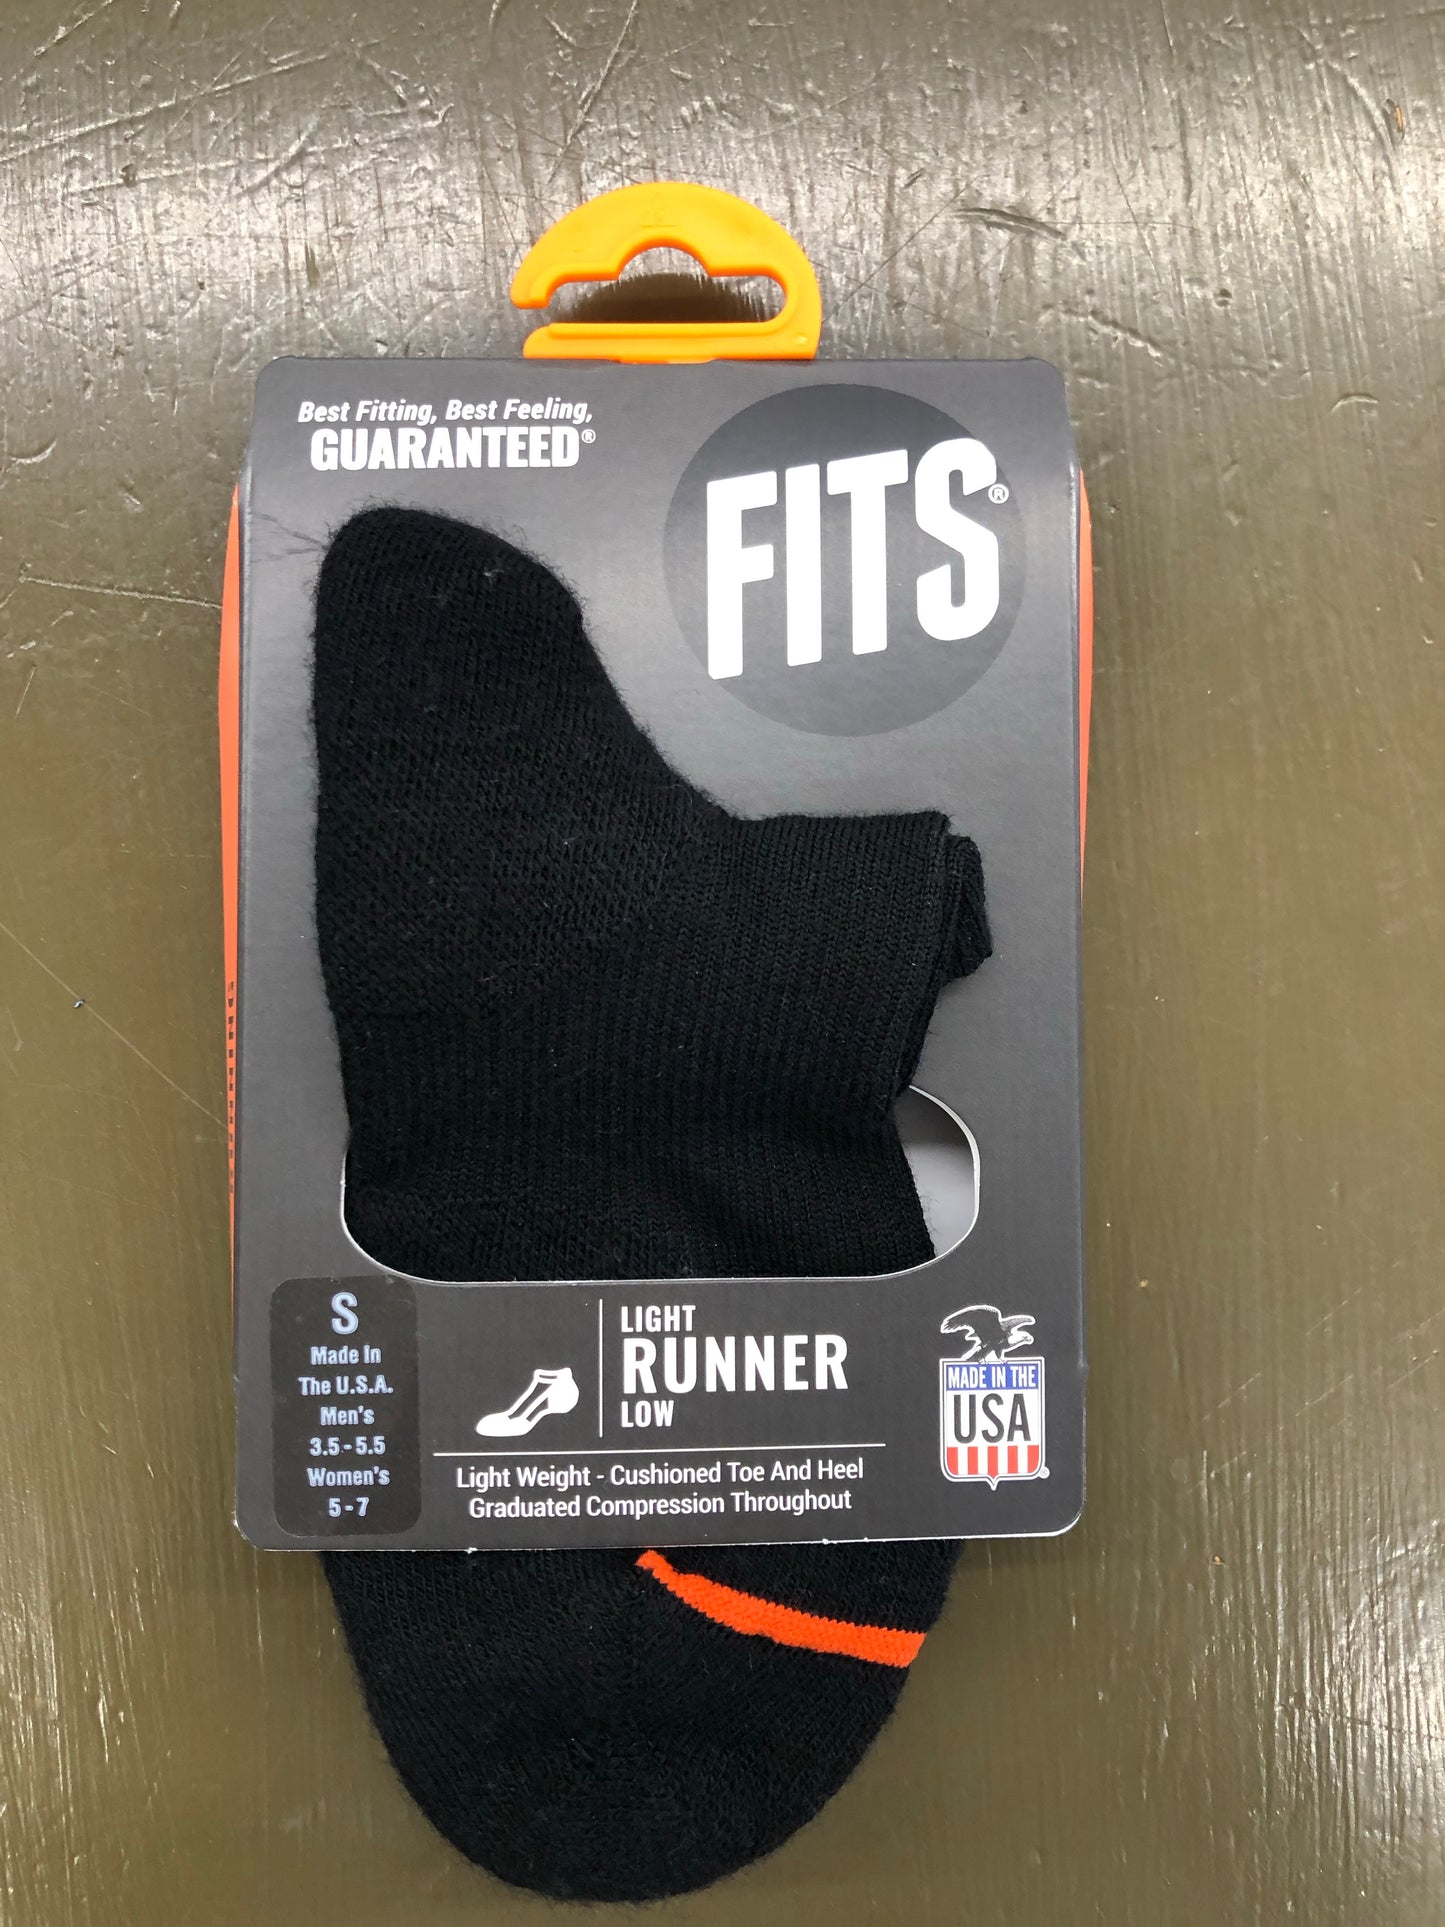 Light Runner Low FITS Socks Black